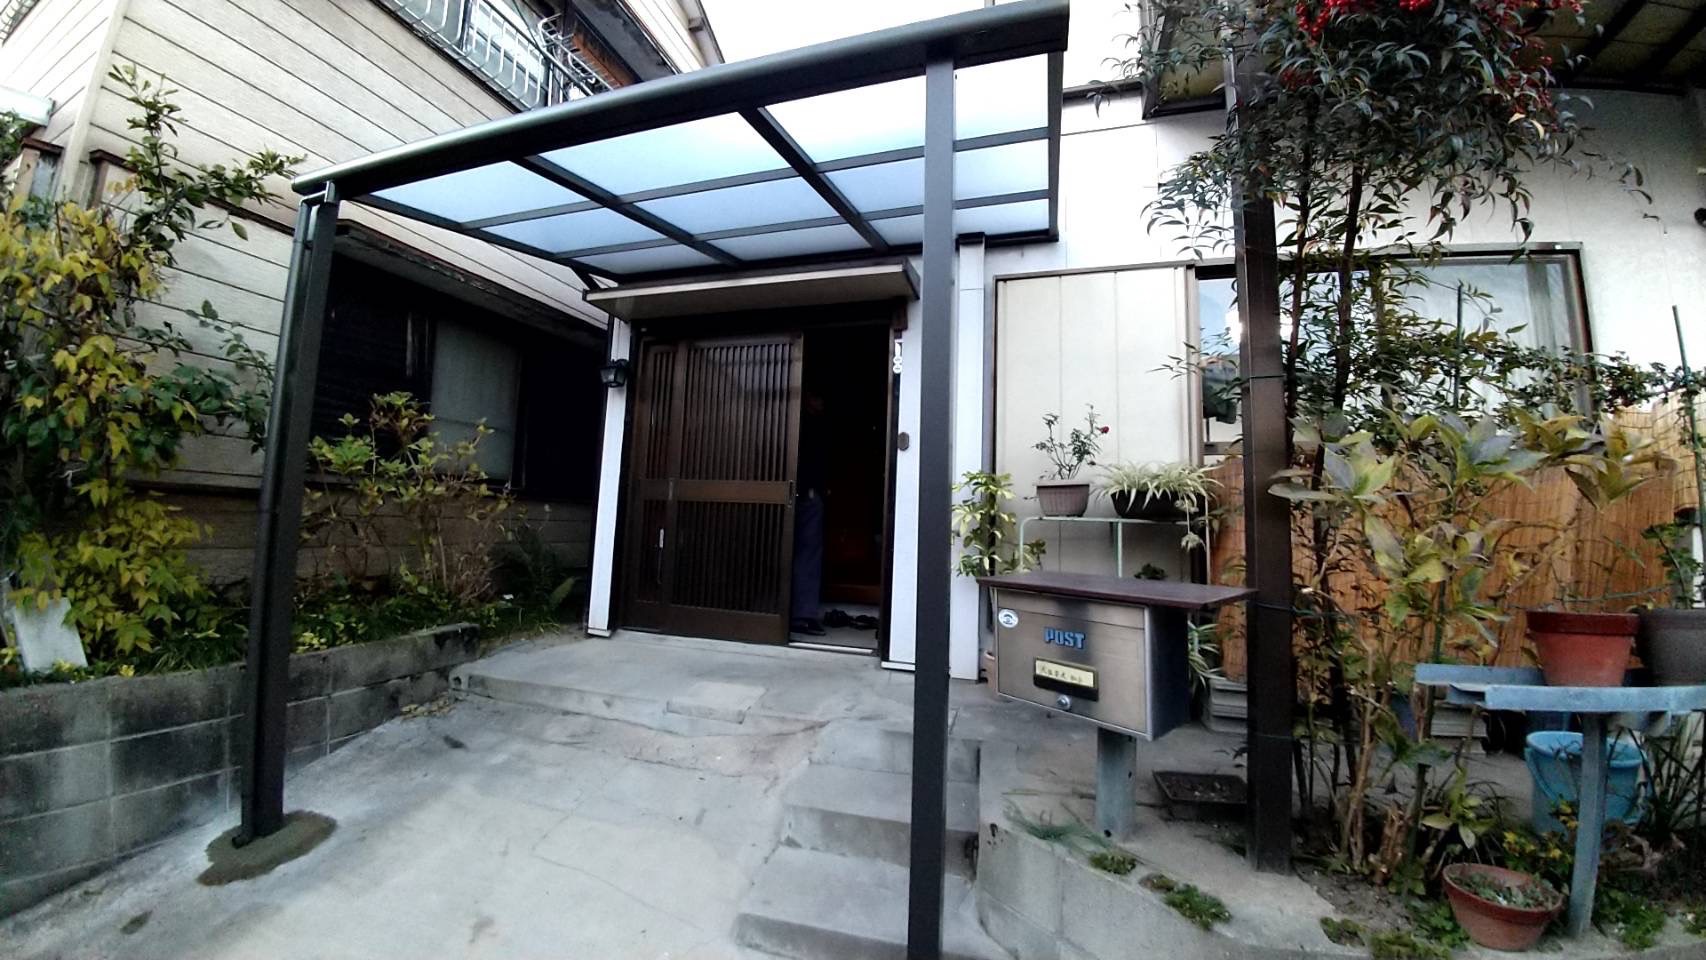 愛知県大府市の戸建住宅にて、玄関前に庇取付工事を行いました。（LIXILテラス屋根　スピーネ）【秀和建工】